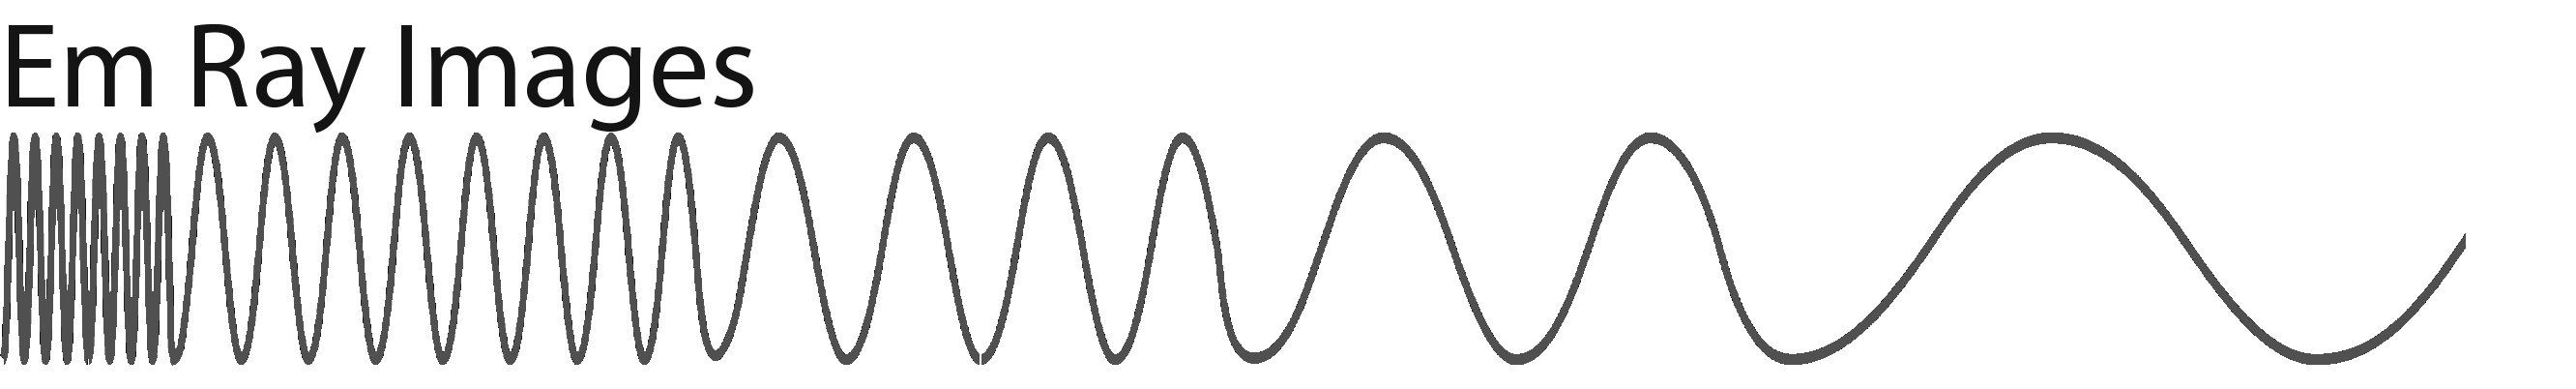 em ray images logo